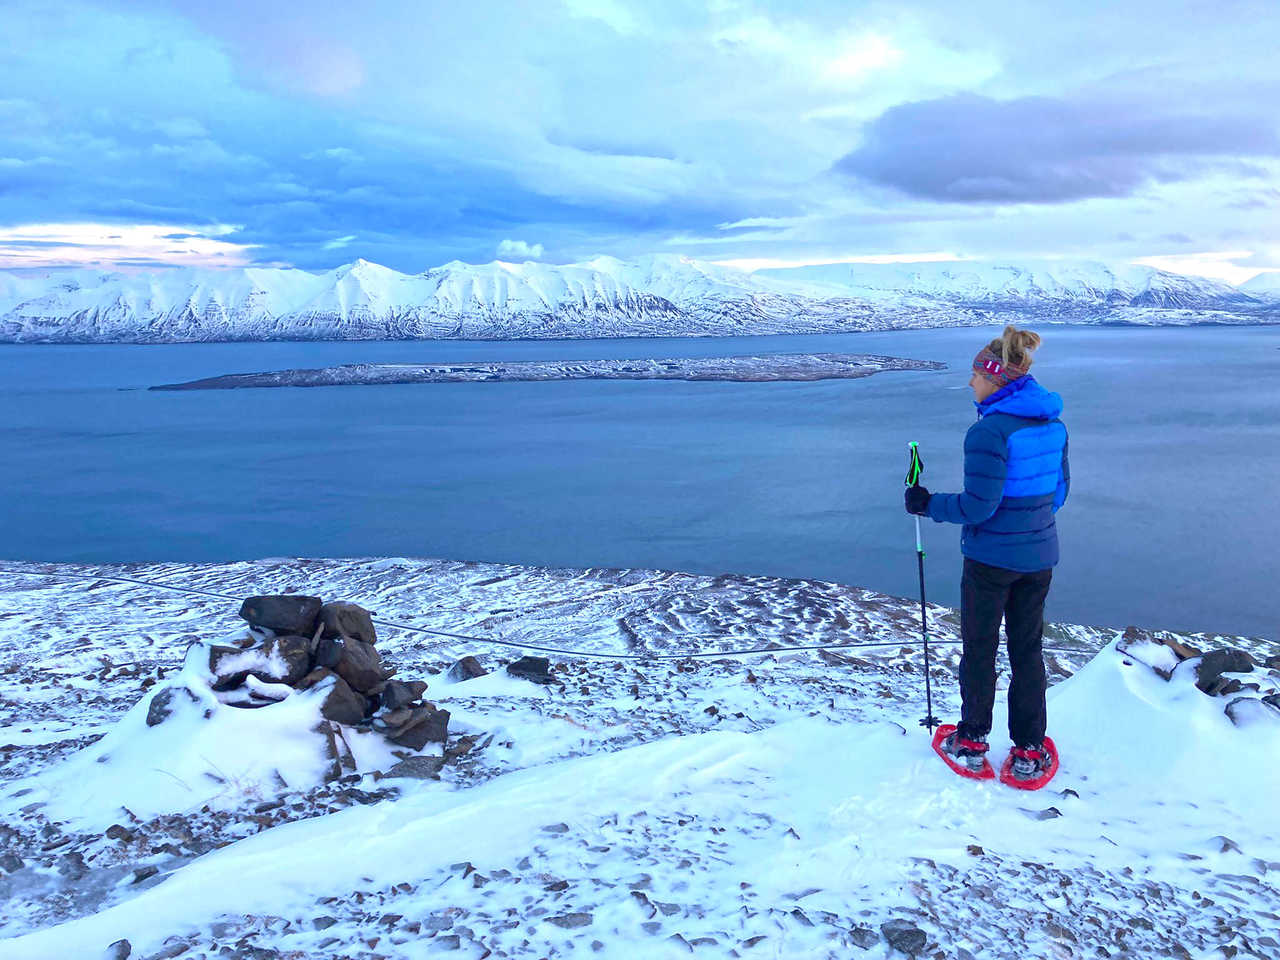 Vue sur l'océan en Islande, voyage en hiver